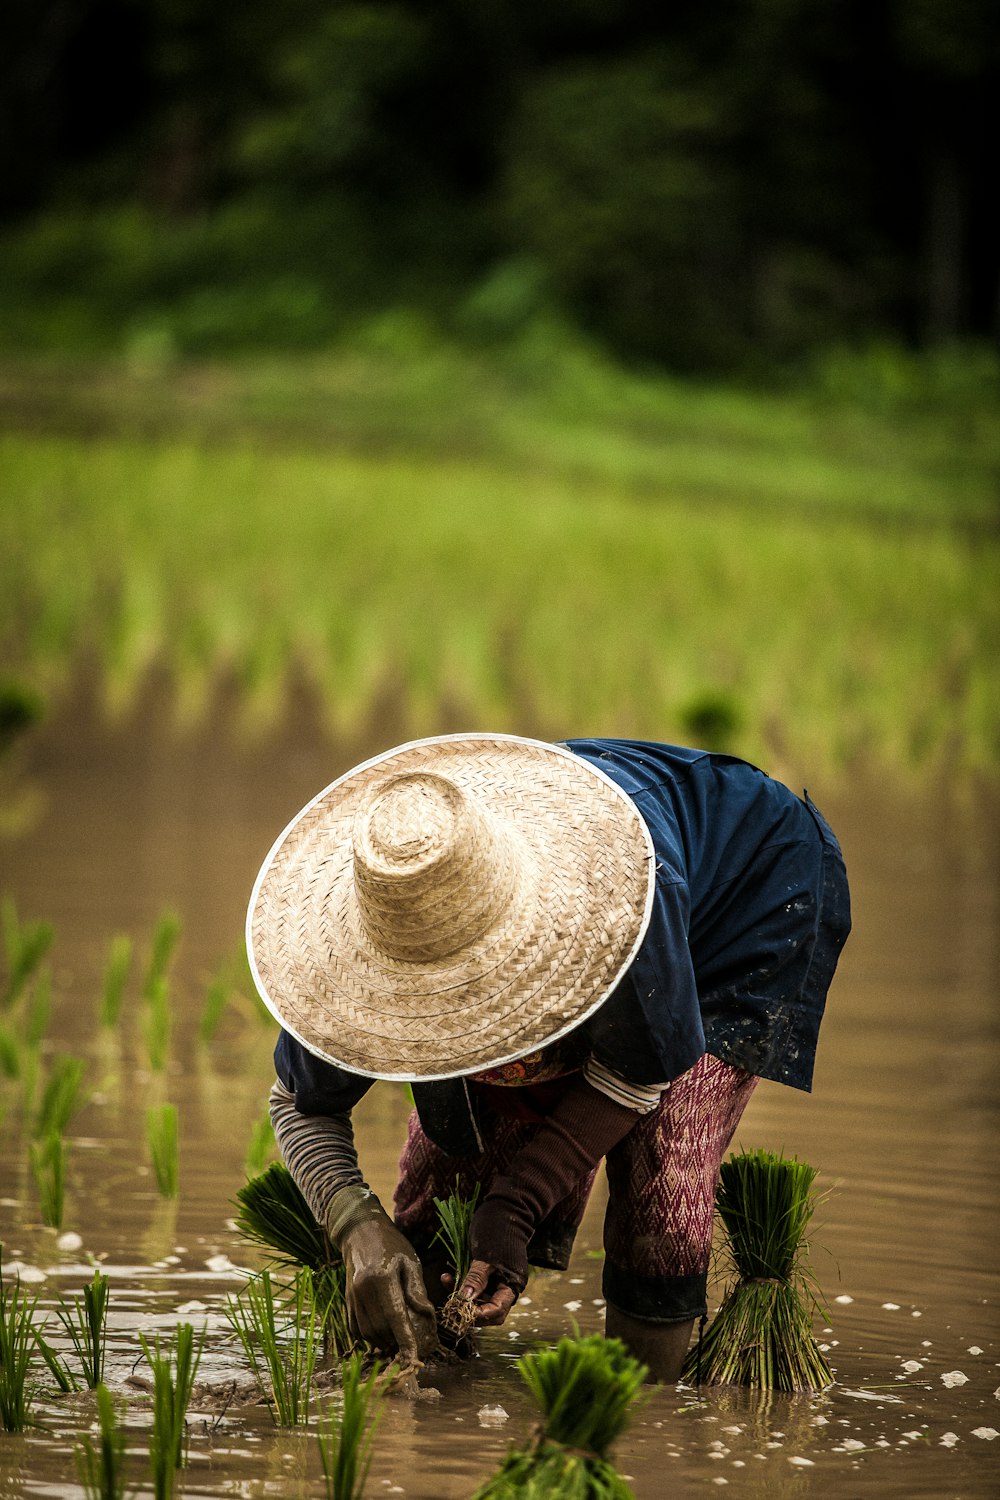 茶色の麦わら帽子をかぶって田植えをしている人 セレクティブフォーカス撮影